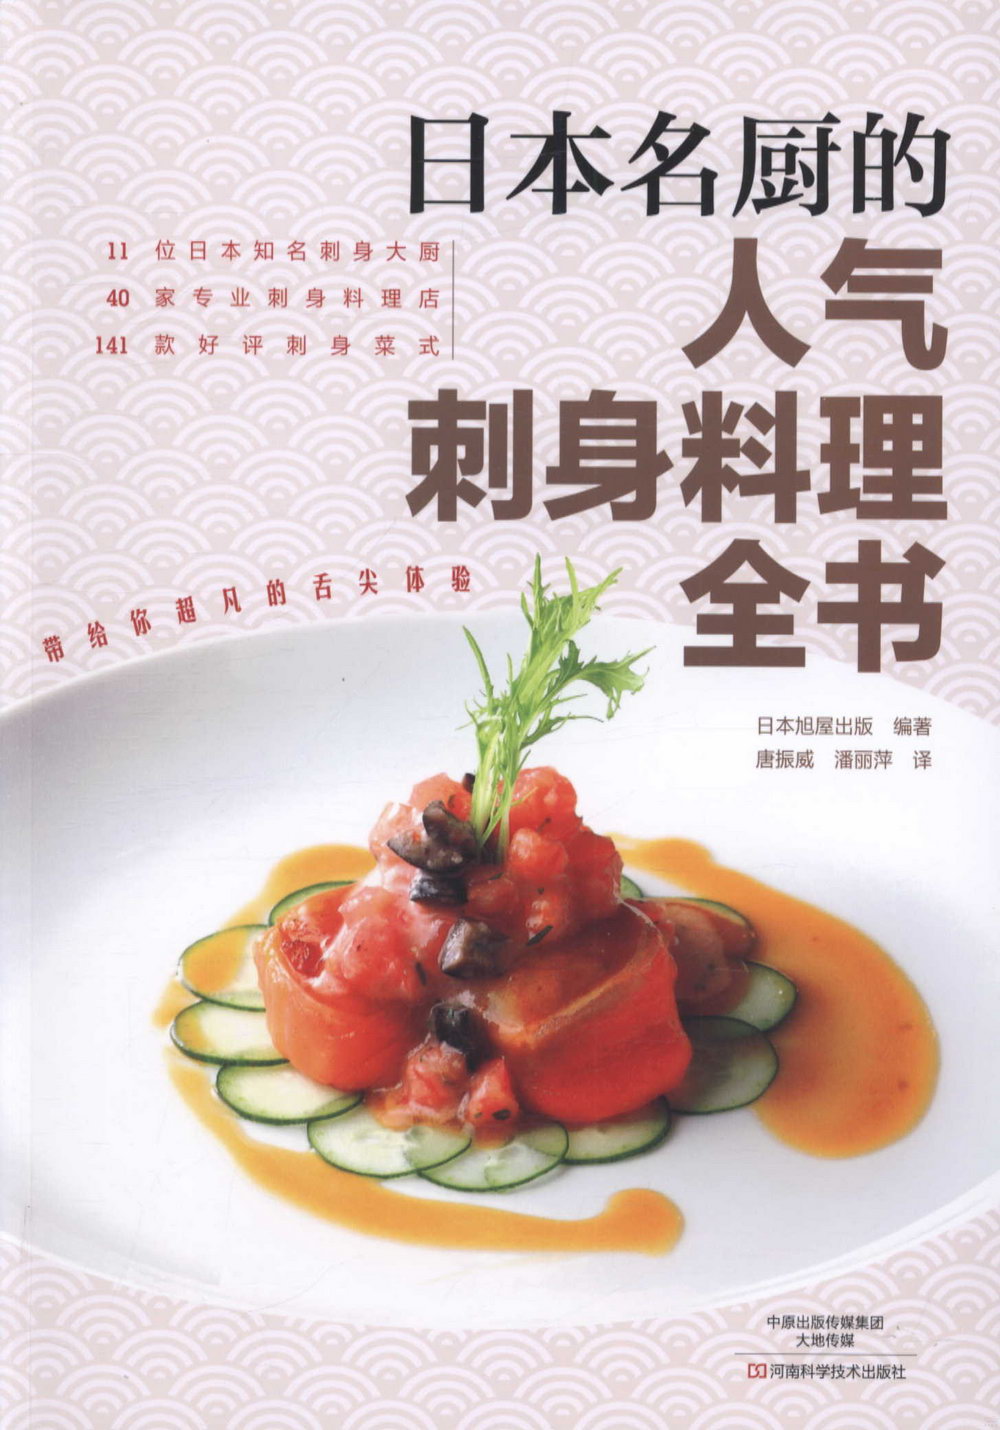 日本名廚的人氣刺身料理全書